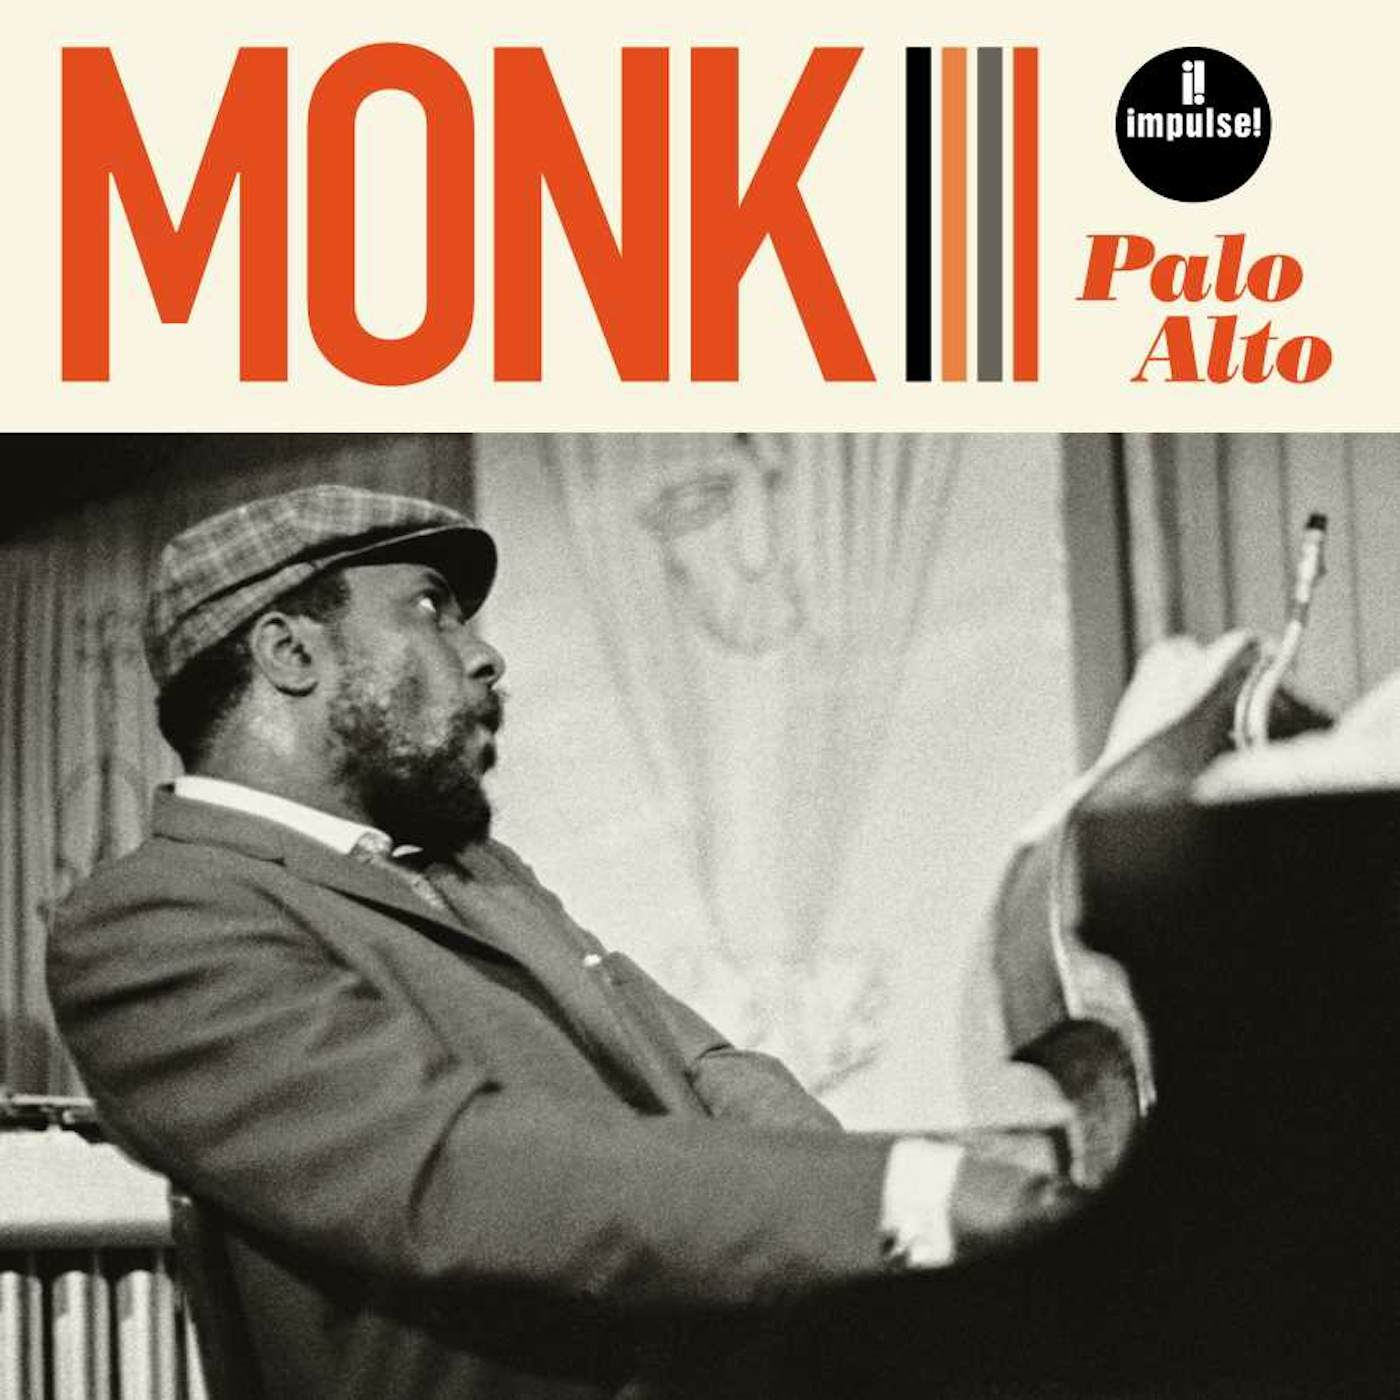 Thelonious Monk Palo Alto Vinyl Record